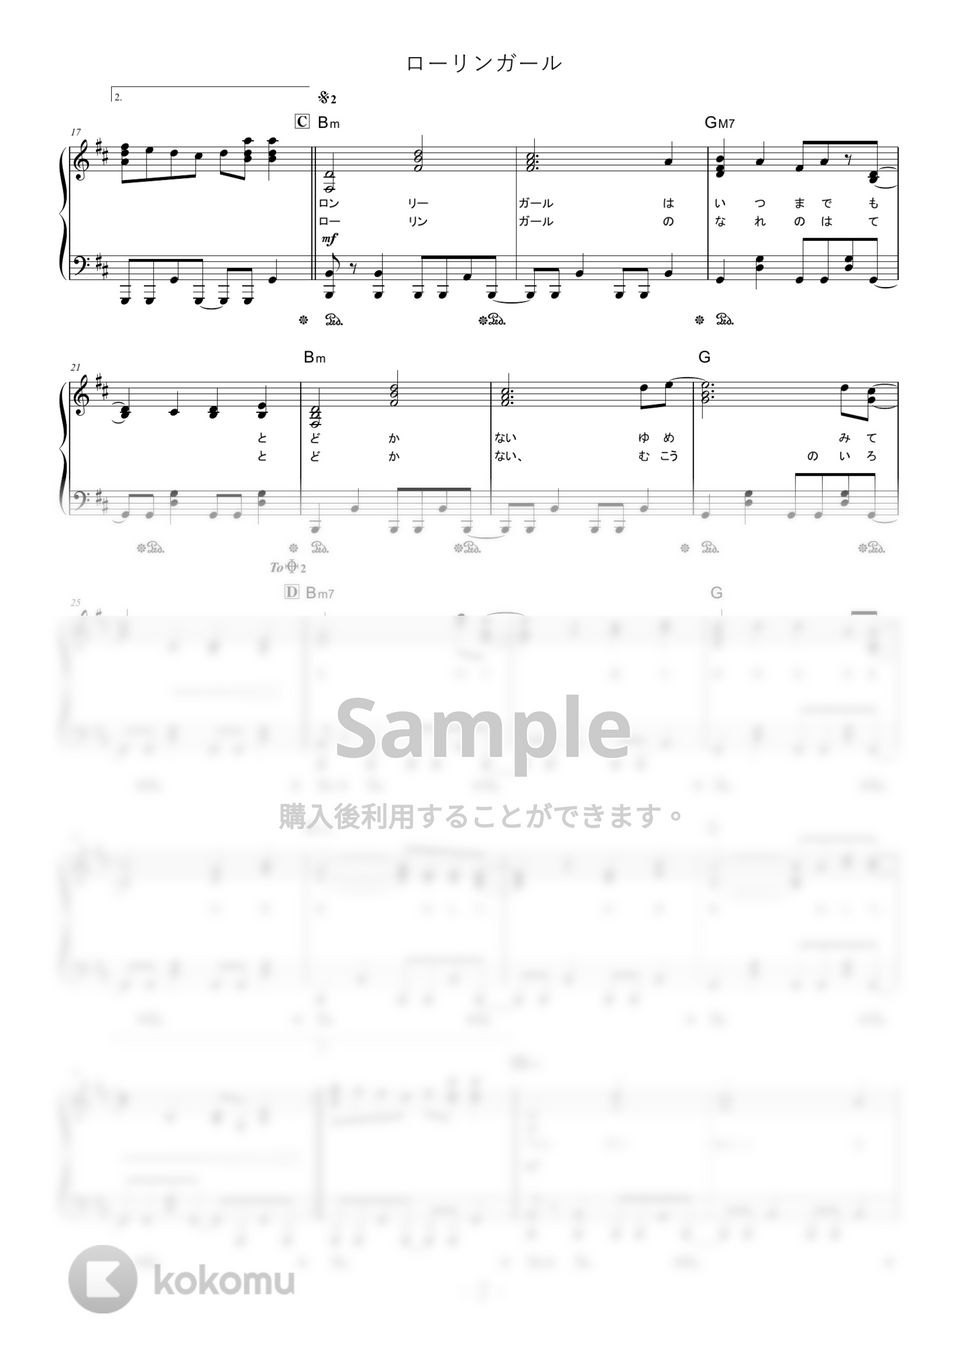 wowaka - ローリンガール (難易度:★★★★☆/歌詞・コード・ペダル付き) by Dさん